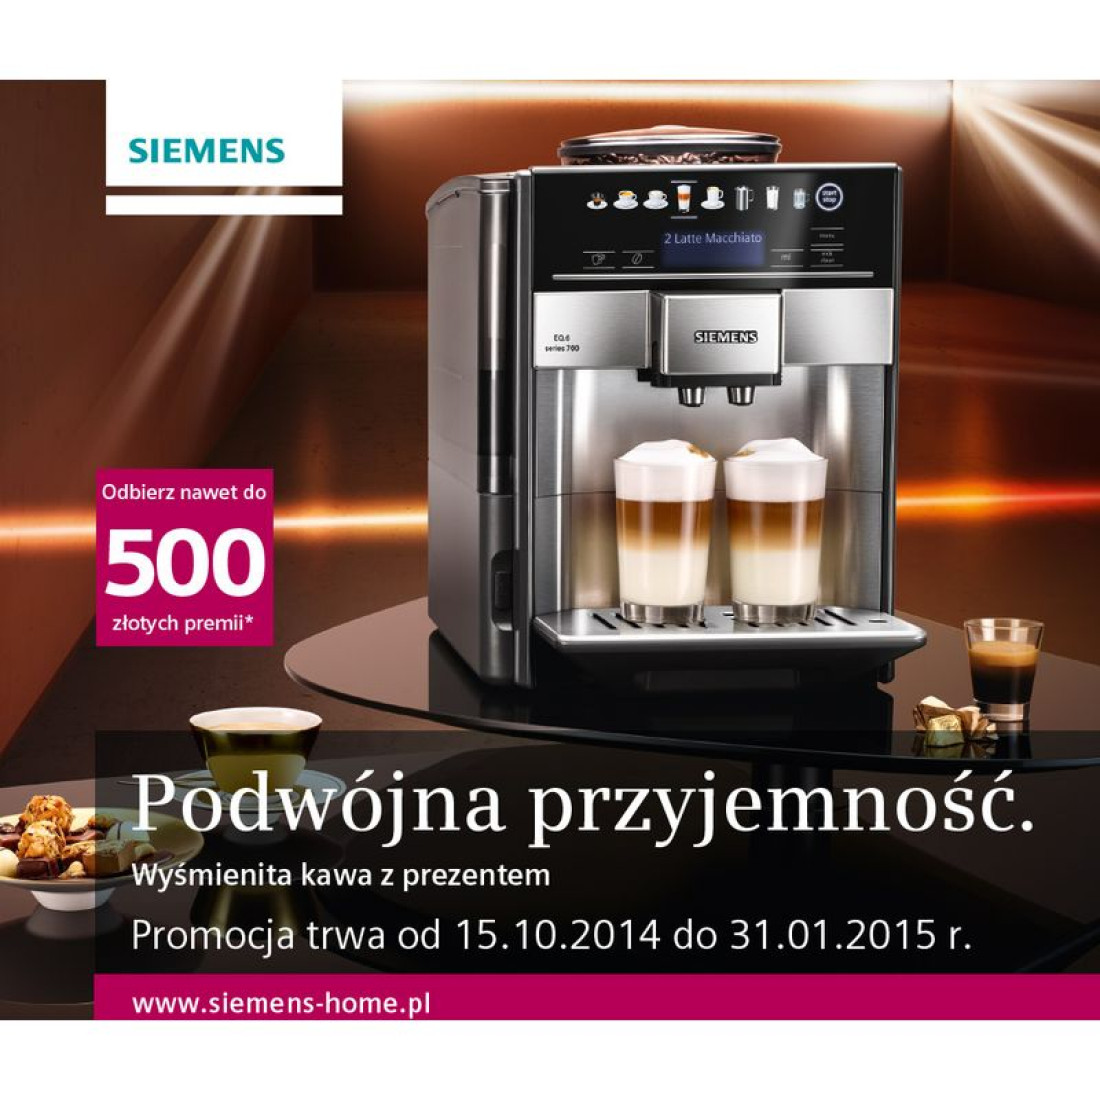 Podwójna przyjemność - kup ekspres do kawy Siemens i odbierz nawet do 500 zł premii